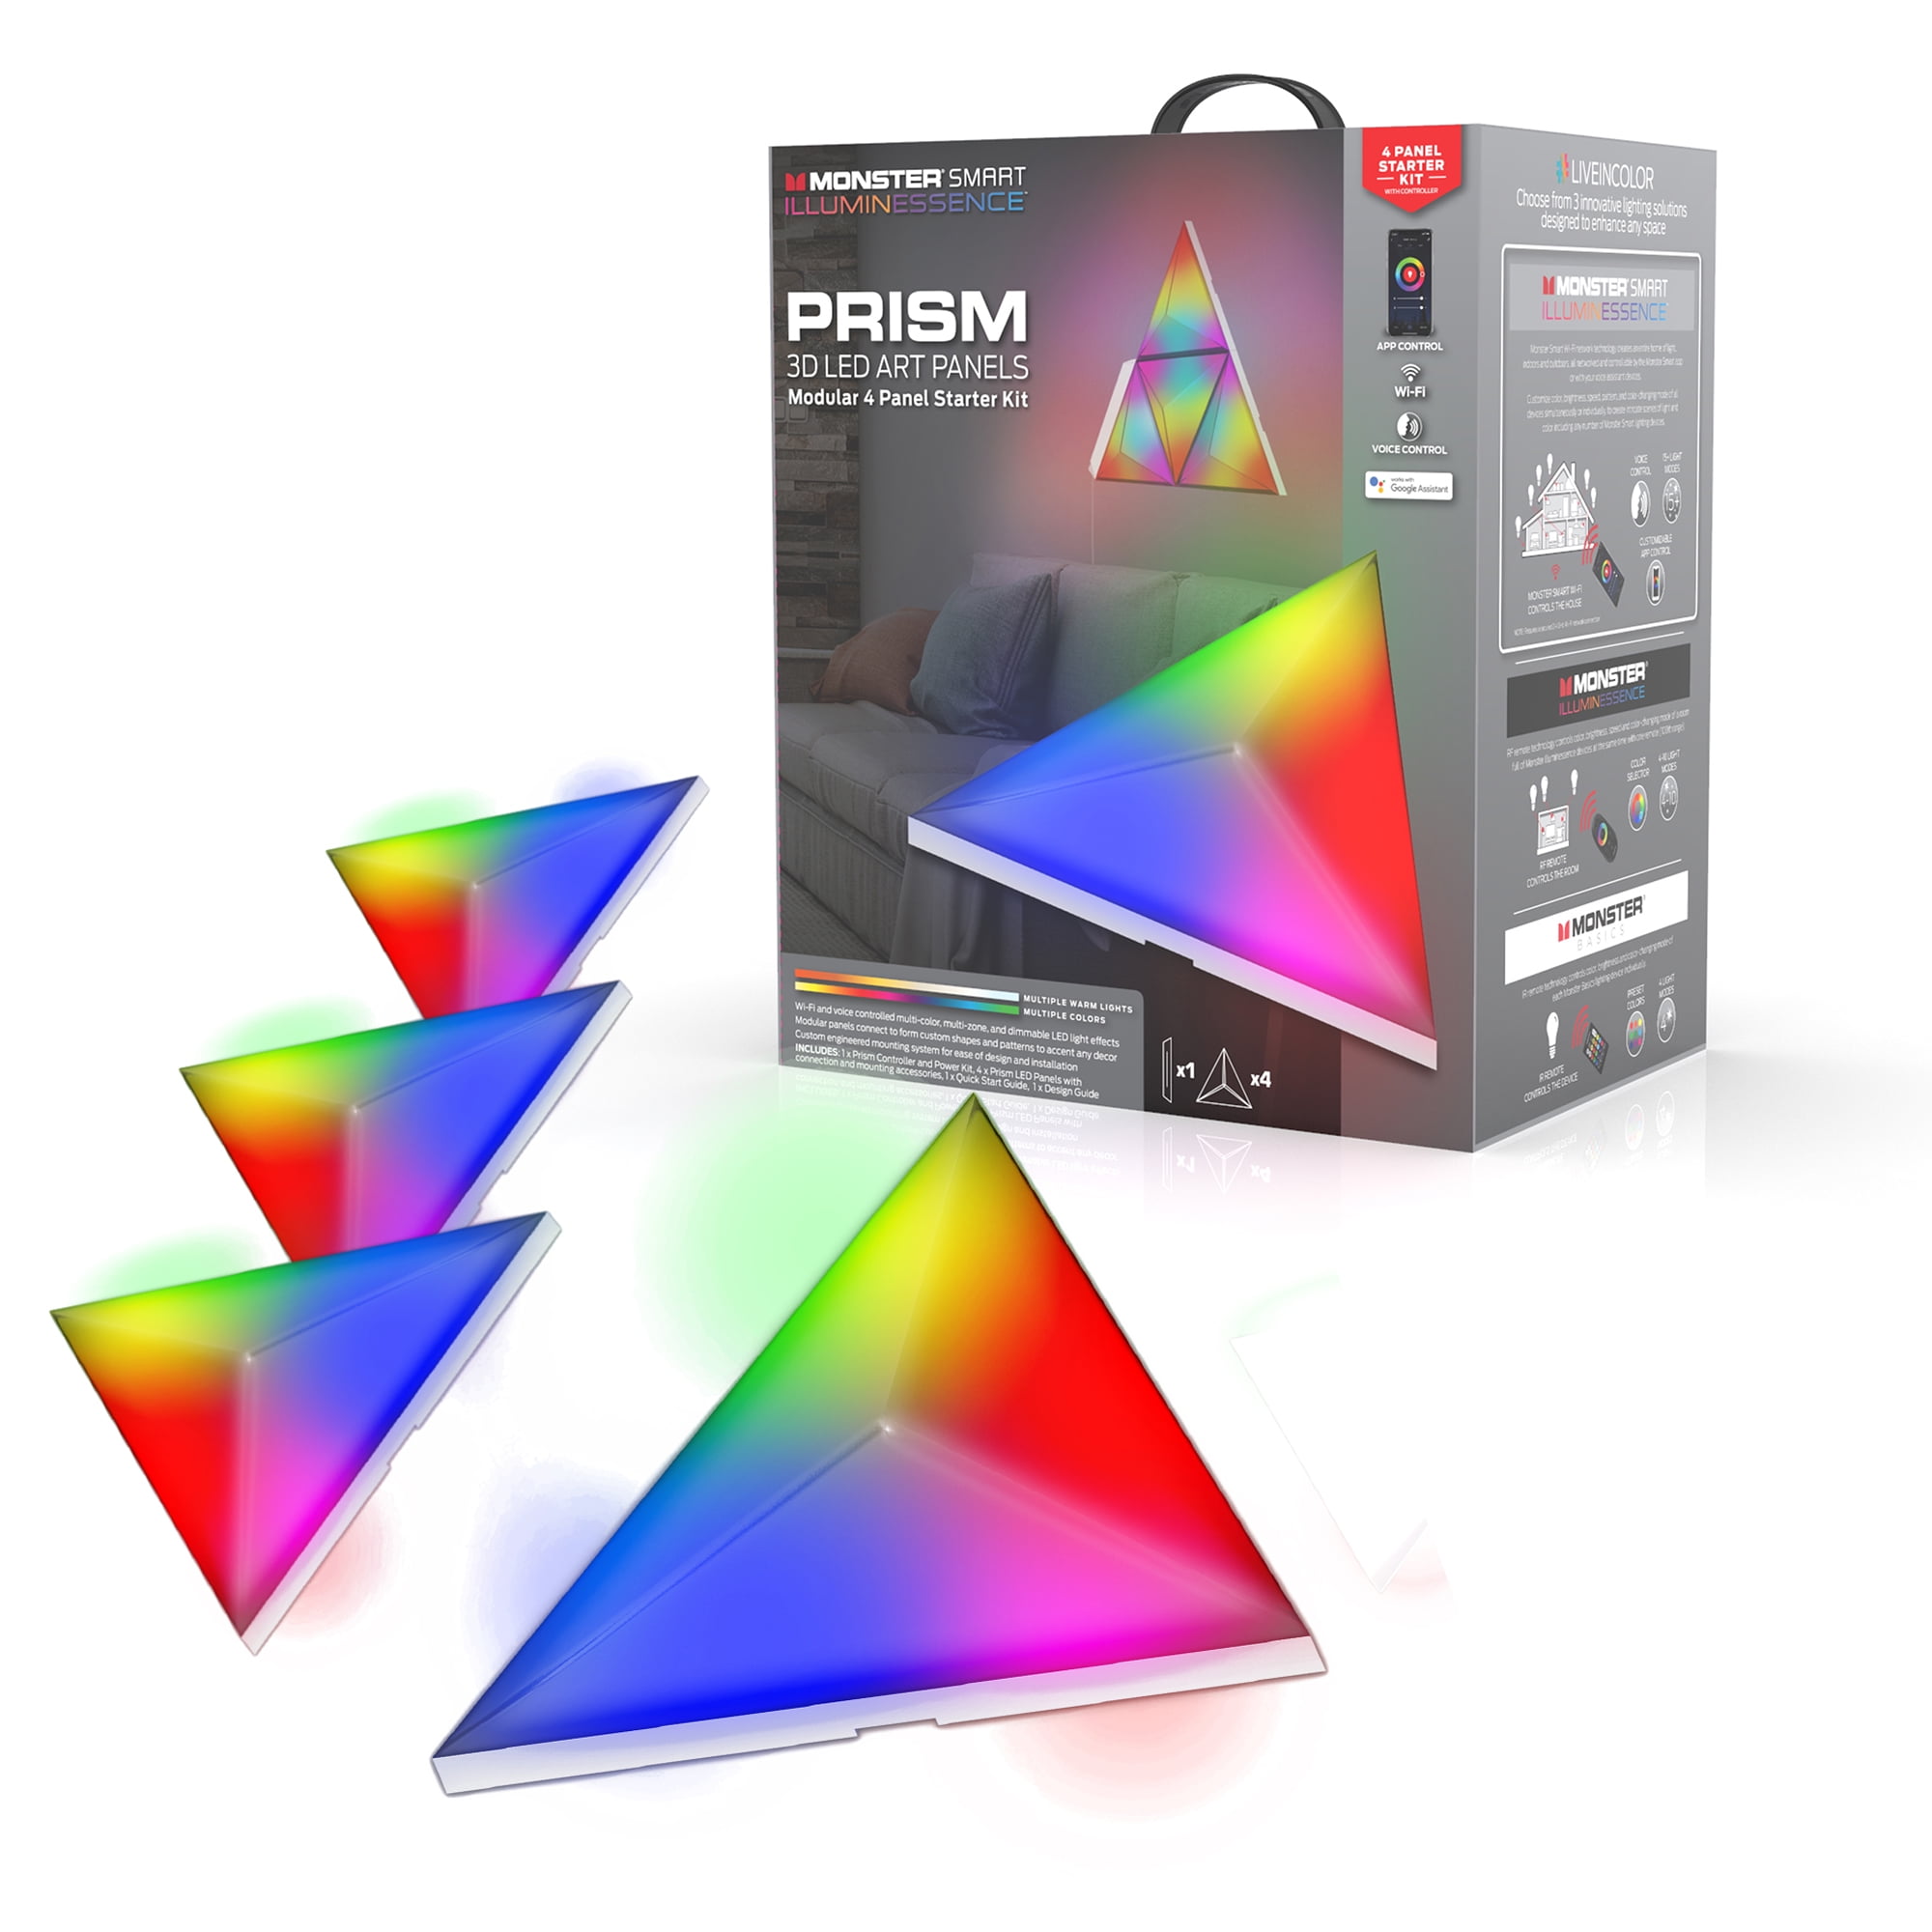 Monster Prism - Smart Modular 3D LED Art Panels, 4 Panel Starter Kit